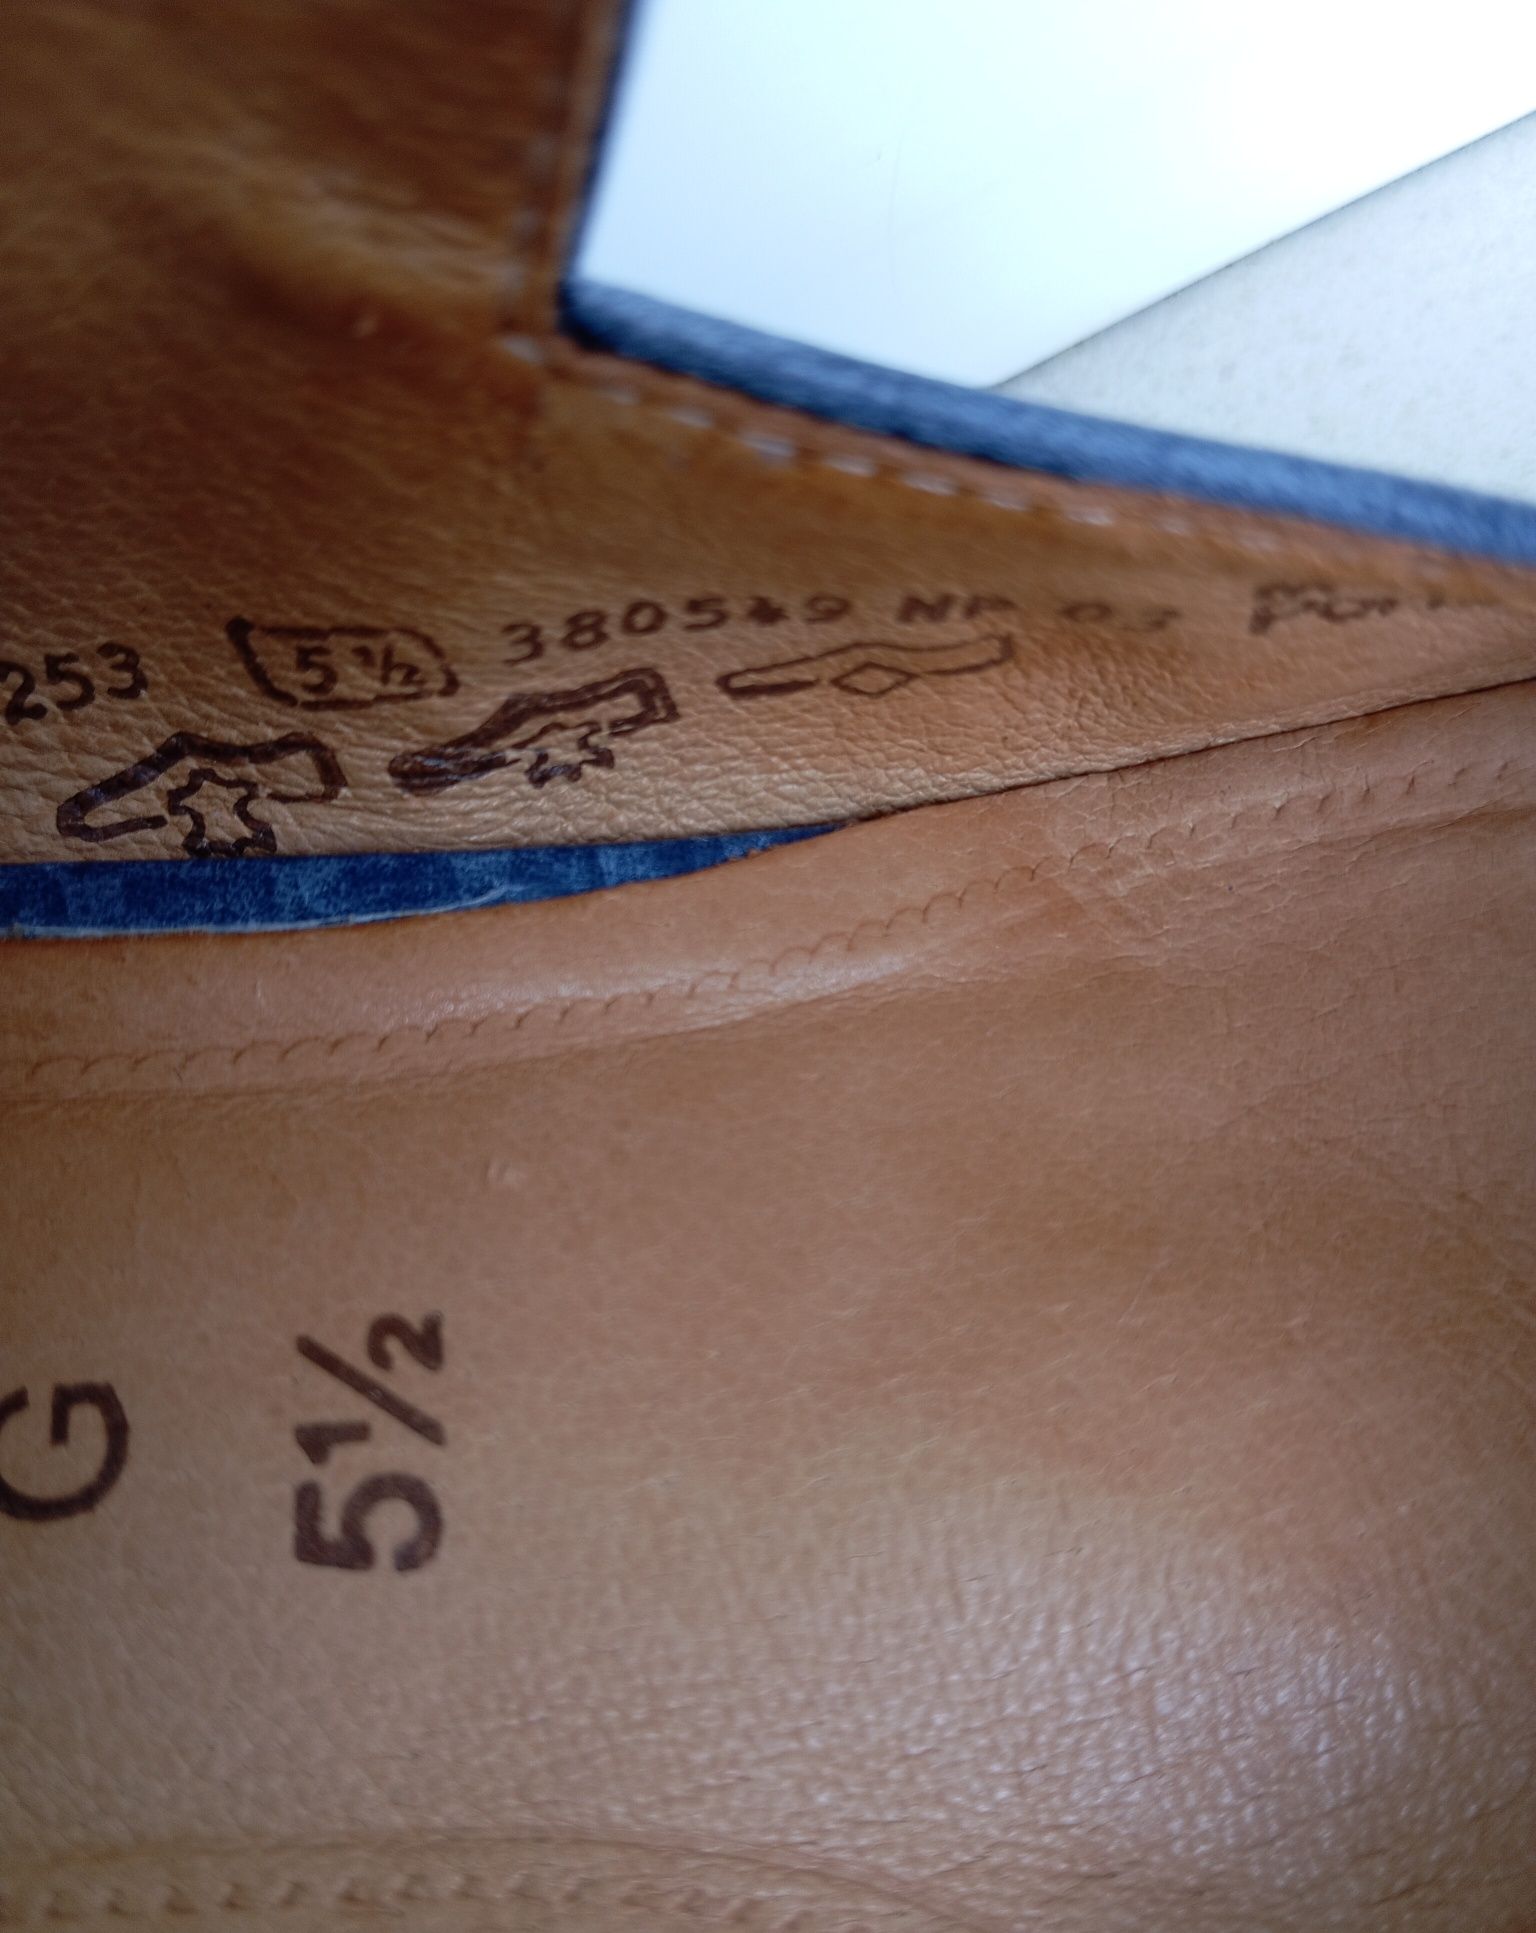 Szaro-niebieskie skórzane buty Gabor, rozmiar 5,5, zapinane na rzepy.